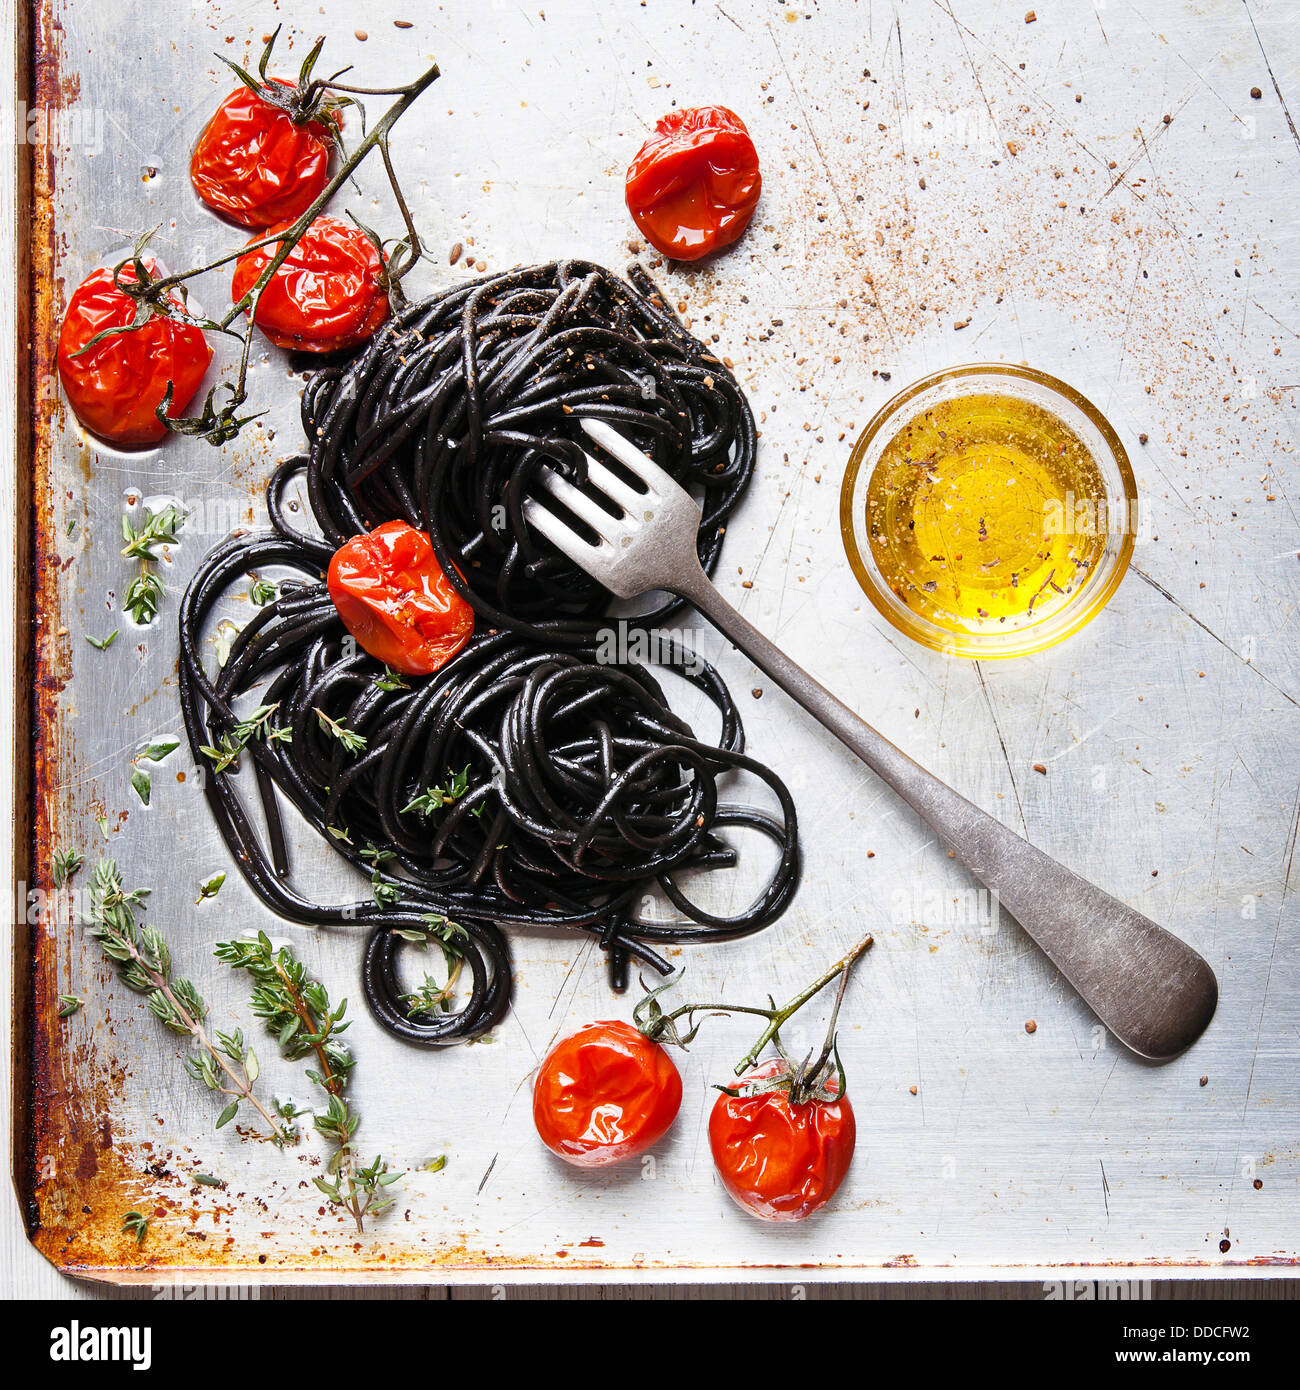 Black spaghetti with tomato sauce Stock Photo